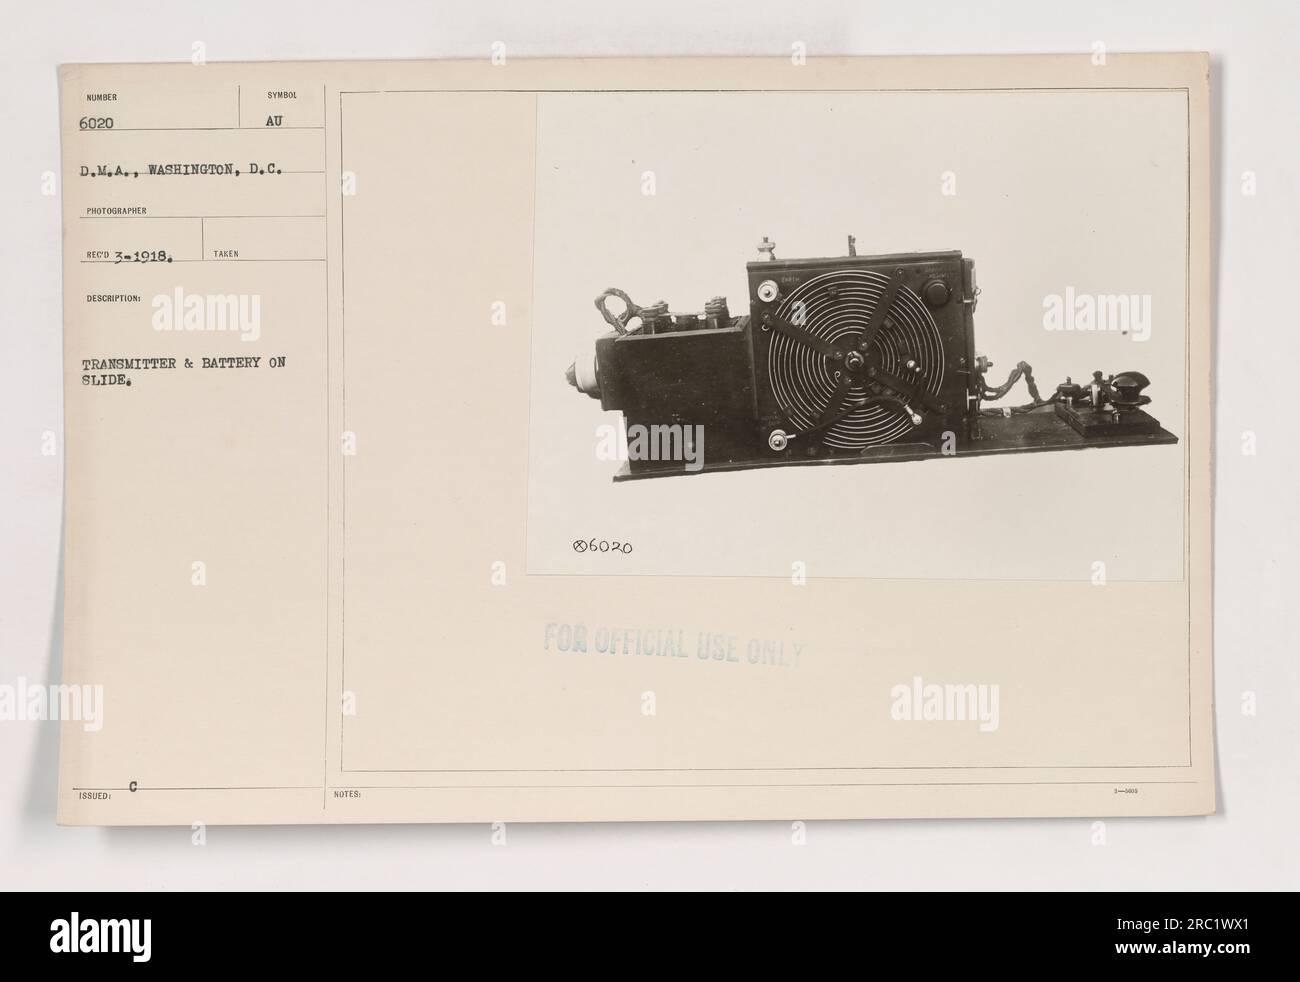 Photographie montrant un émetteur et une pile sur une diapositive, identifiée comme 111-SC-6020, prise par le photographe D.M.A. à Washington, D.C. en mars 1918. La description indique que l'image a été prise pour un usage officiel seulement. Banque D'Images